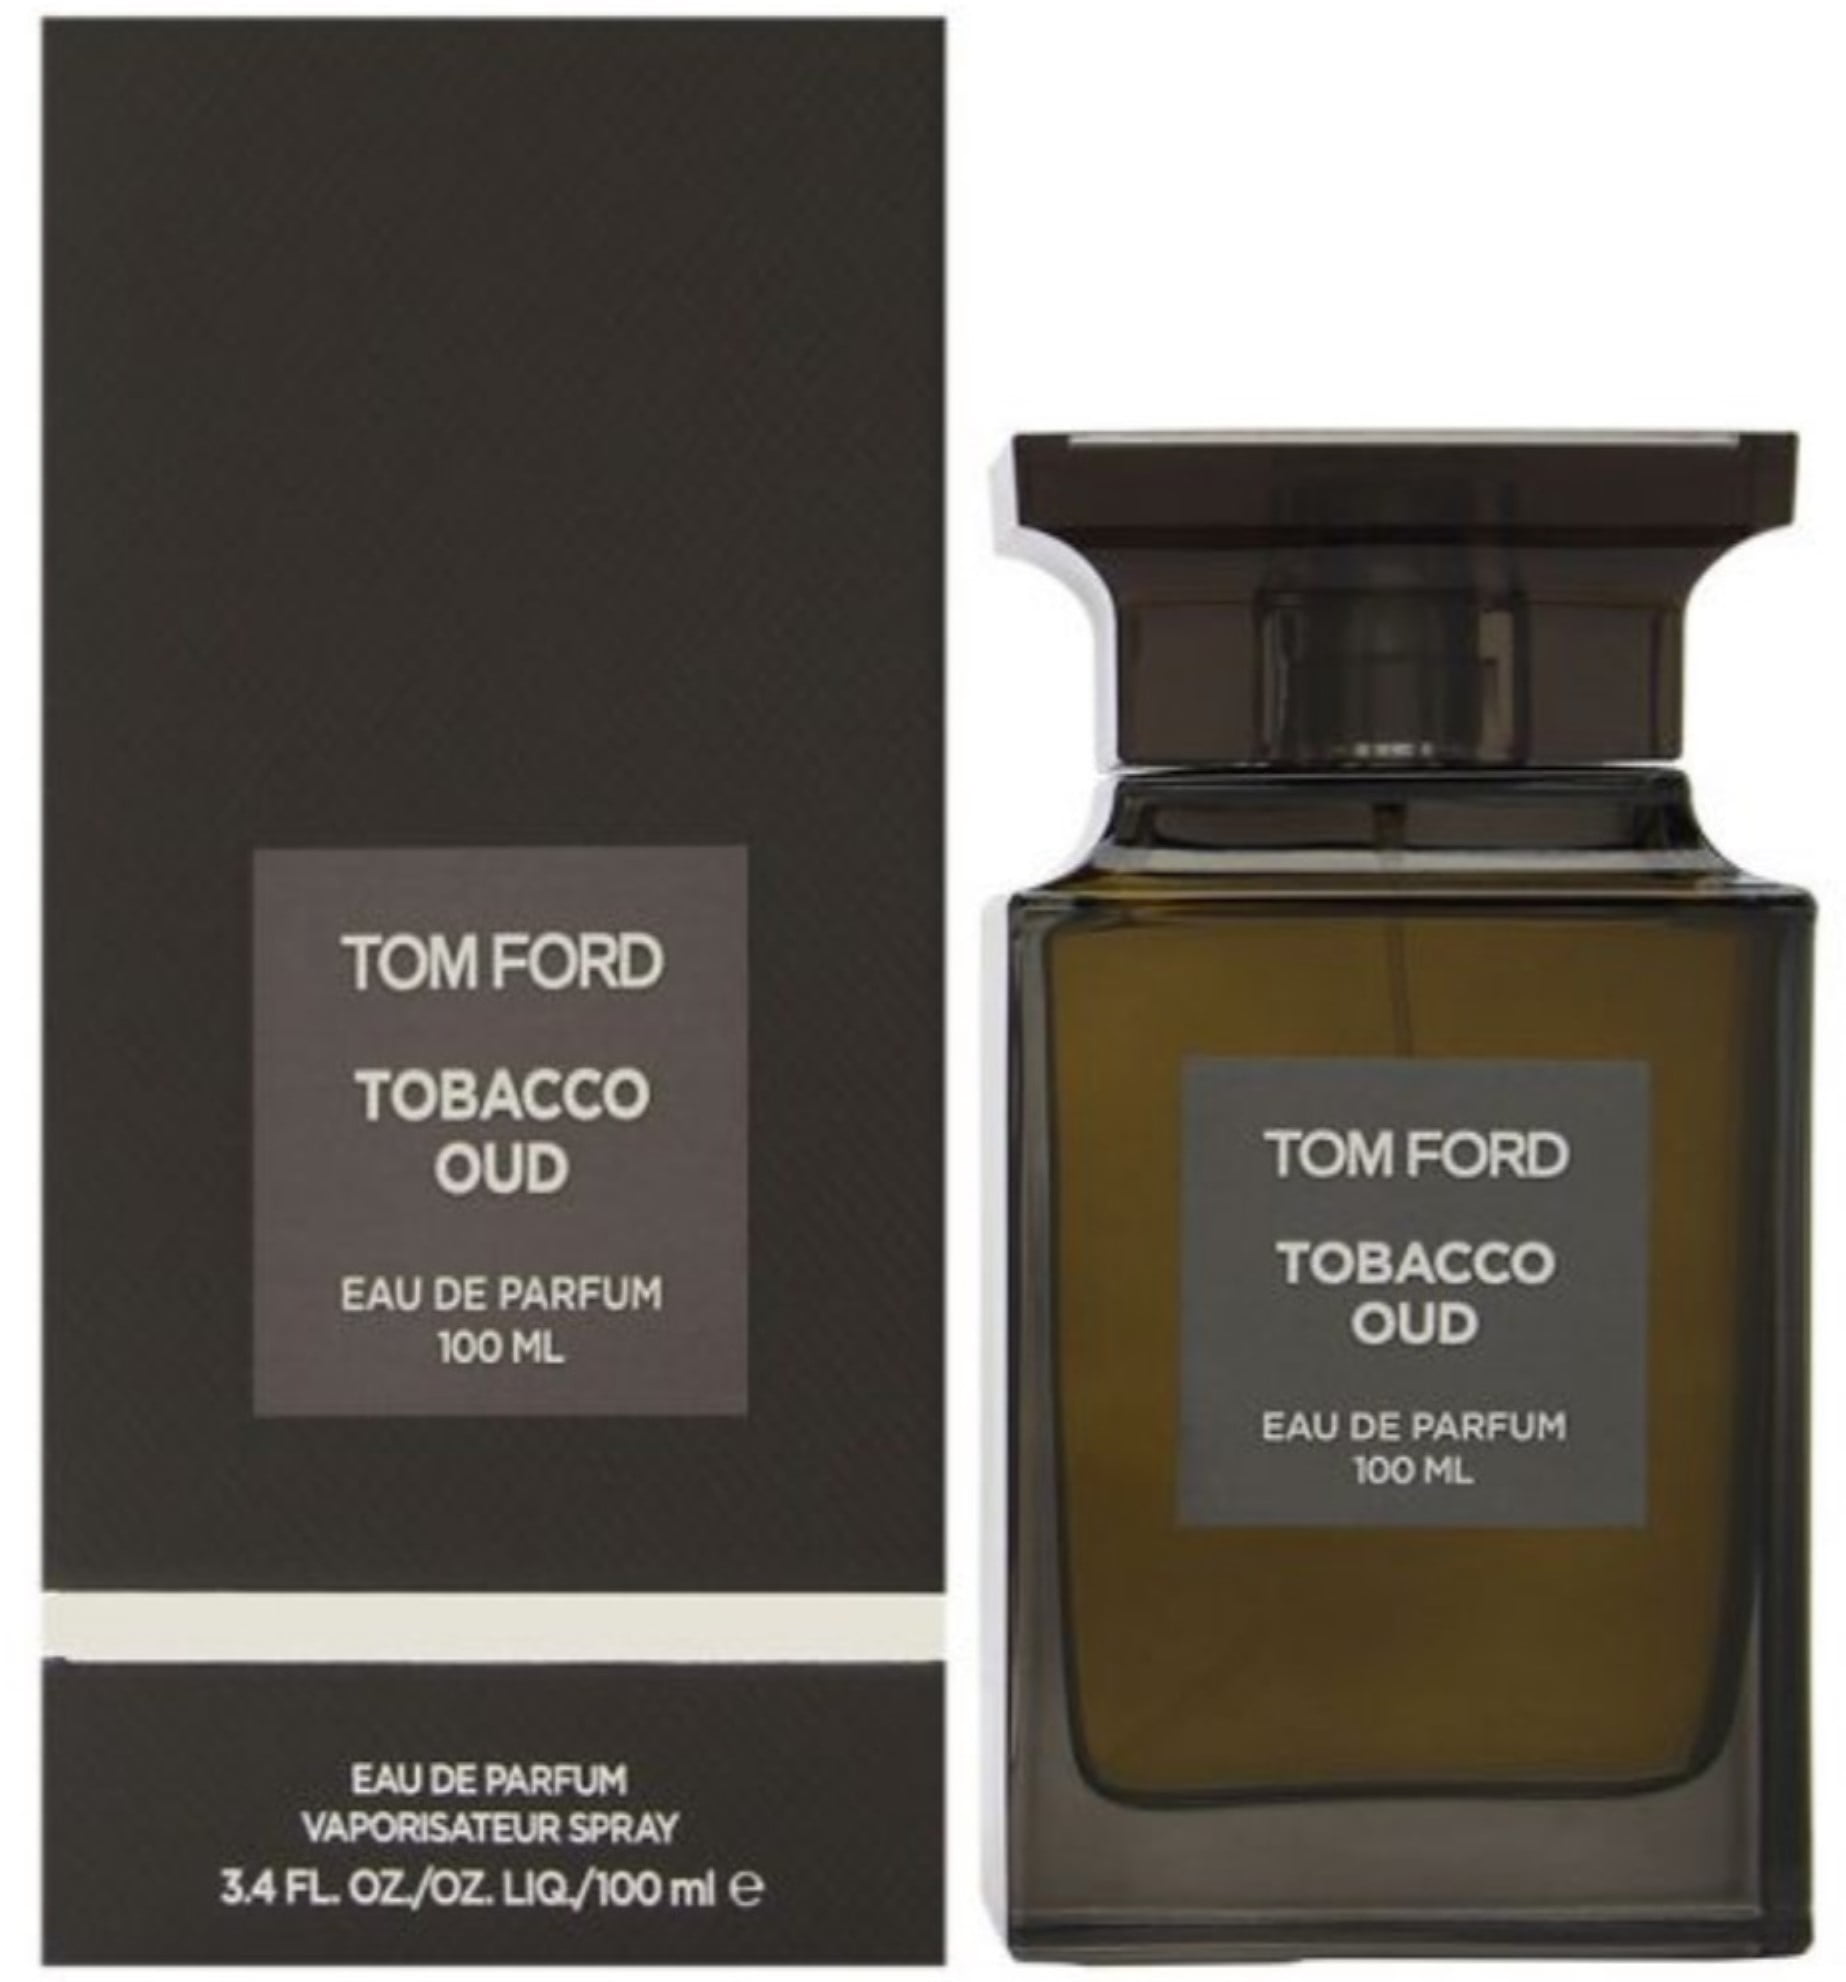 Tom Ford - Tobacco Oud By Tom Ford Eau De Parfum Spray For Women 3.4 oz ...